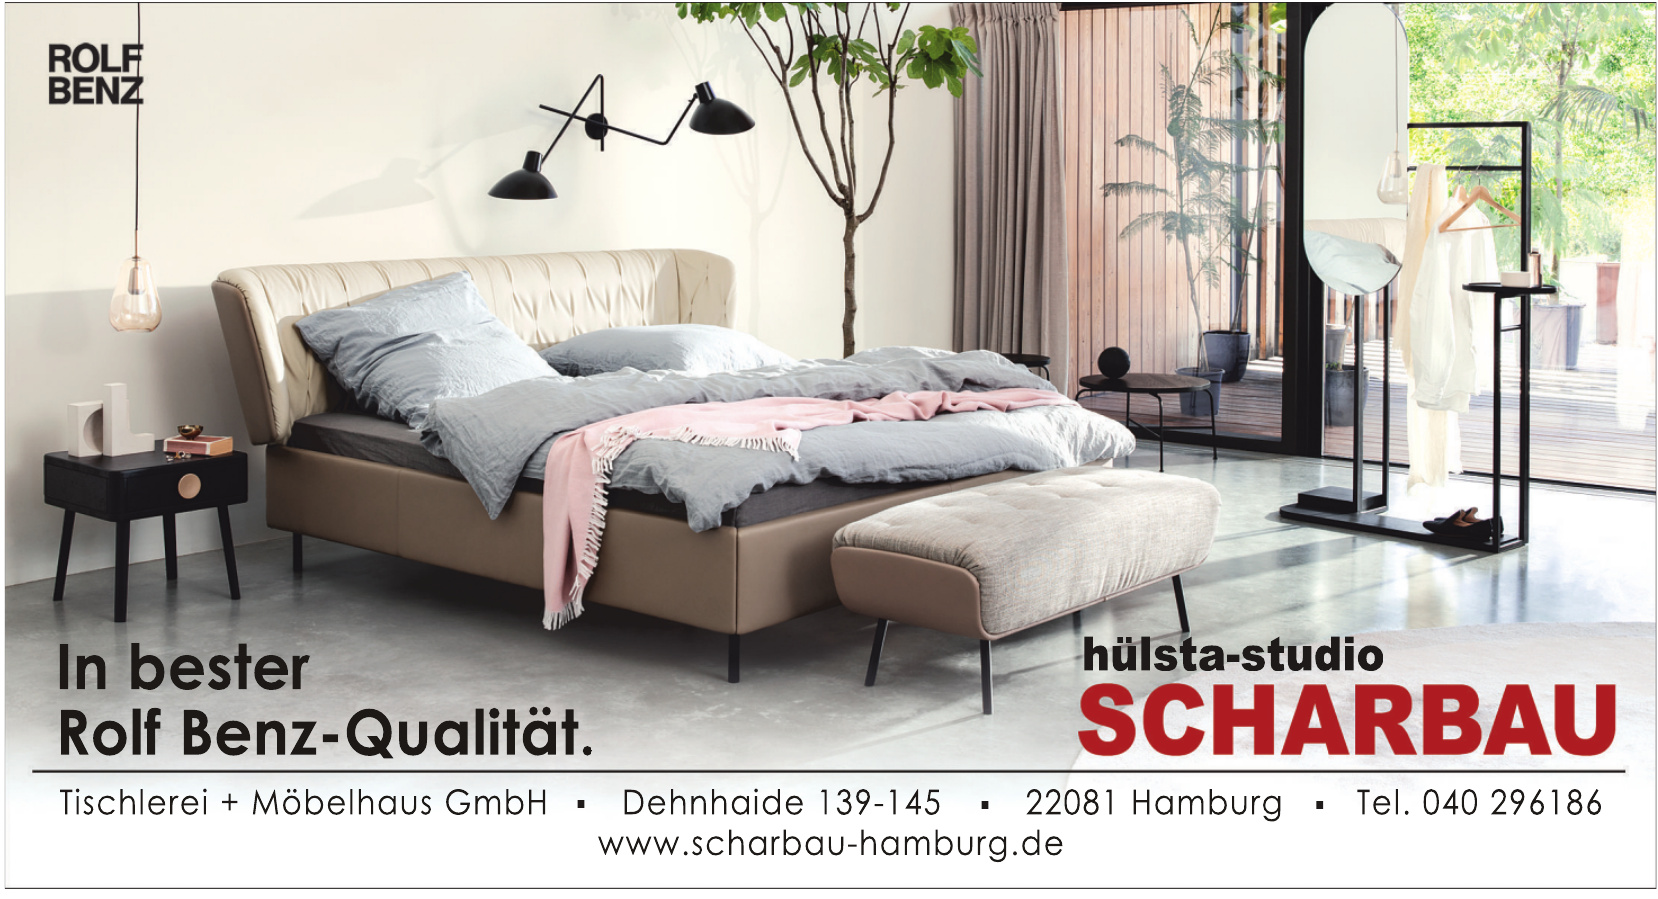 hülsta-studio Scharbau Tischlerei + Möbelhaus GmbH